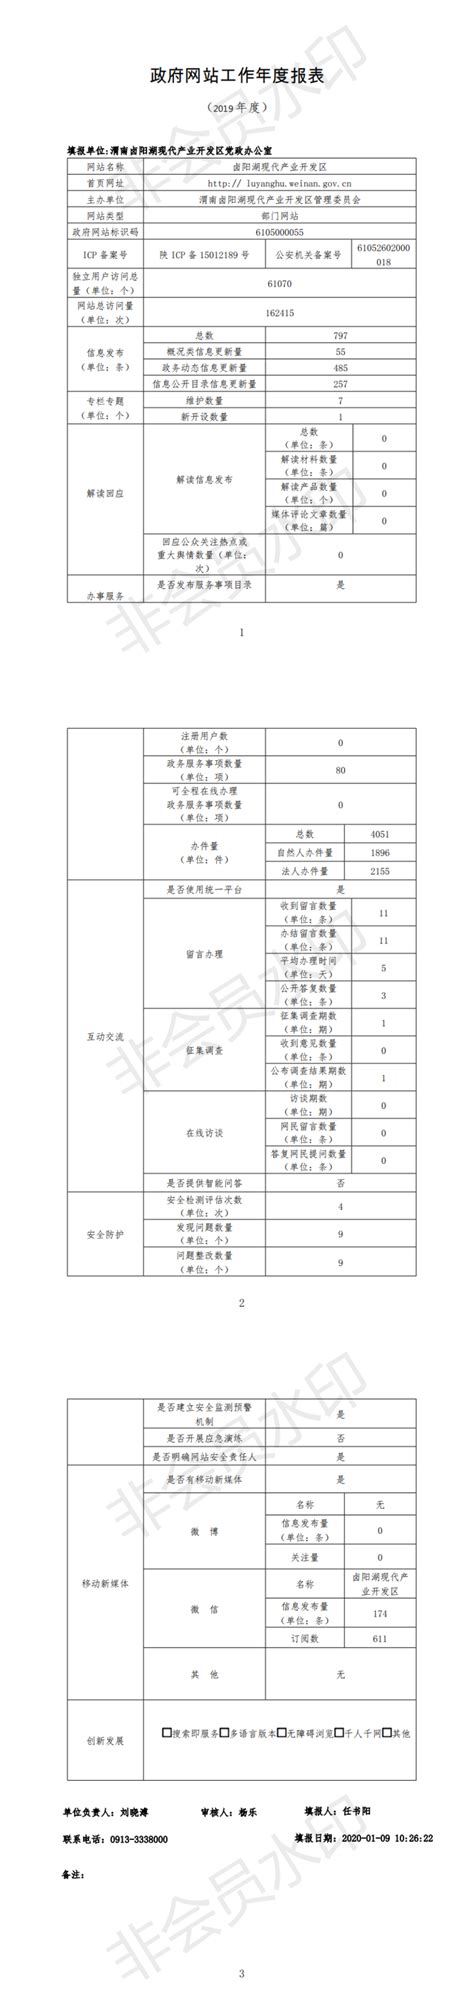 卤阳湖开发区2019年政府网站工作年度报表--渭南市人民政府